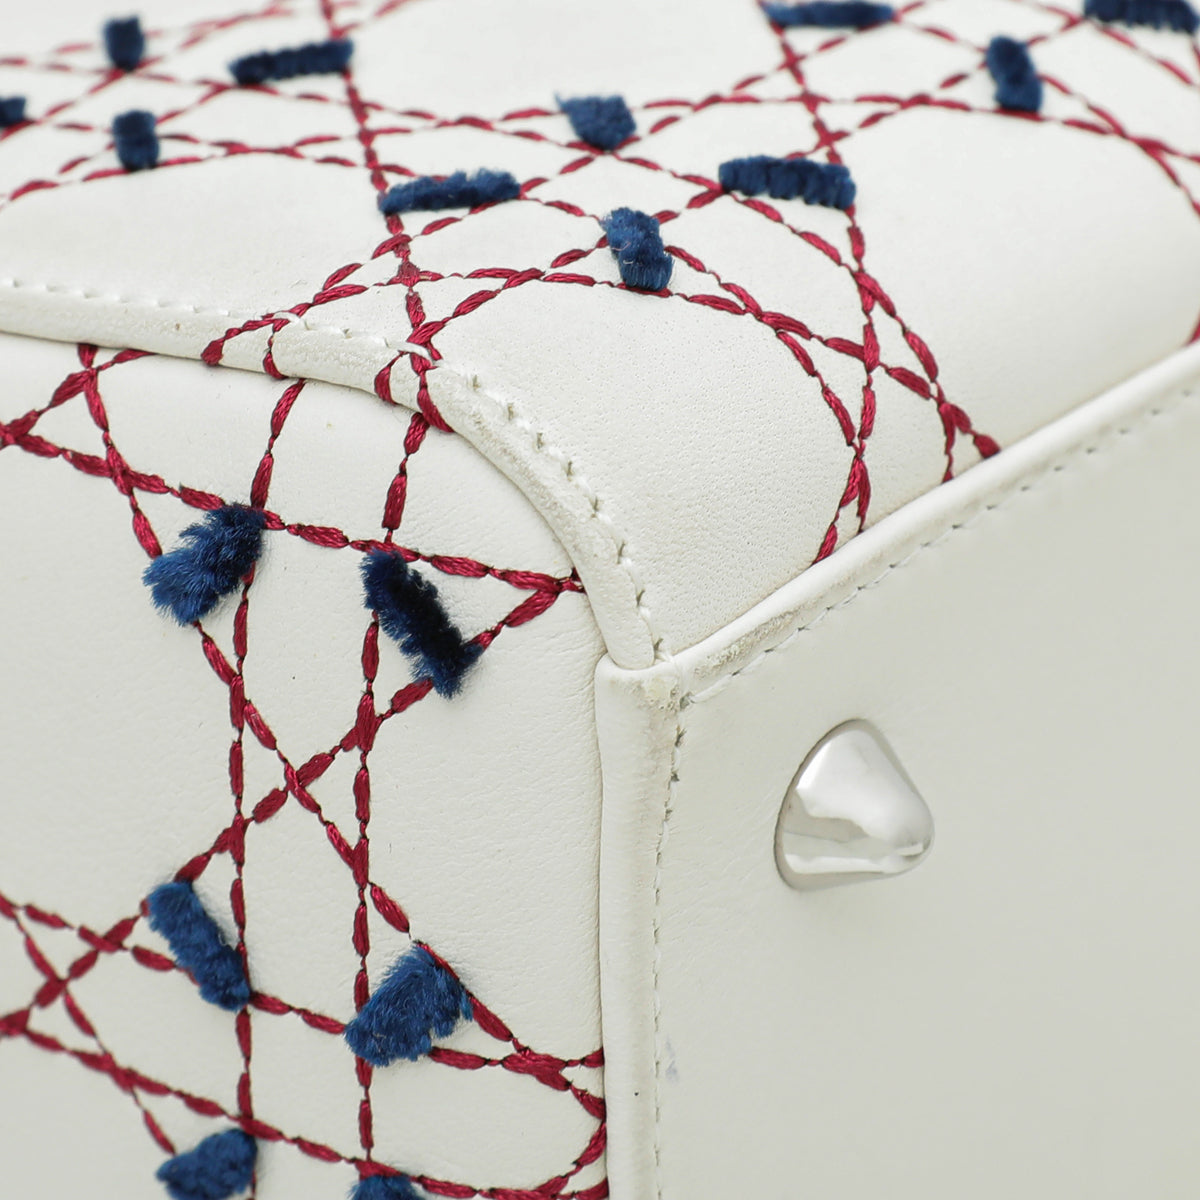 Christian Dior Tricolor Cannage Stitched Ltd.Ed. Lady Dior Medium Bag